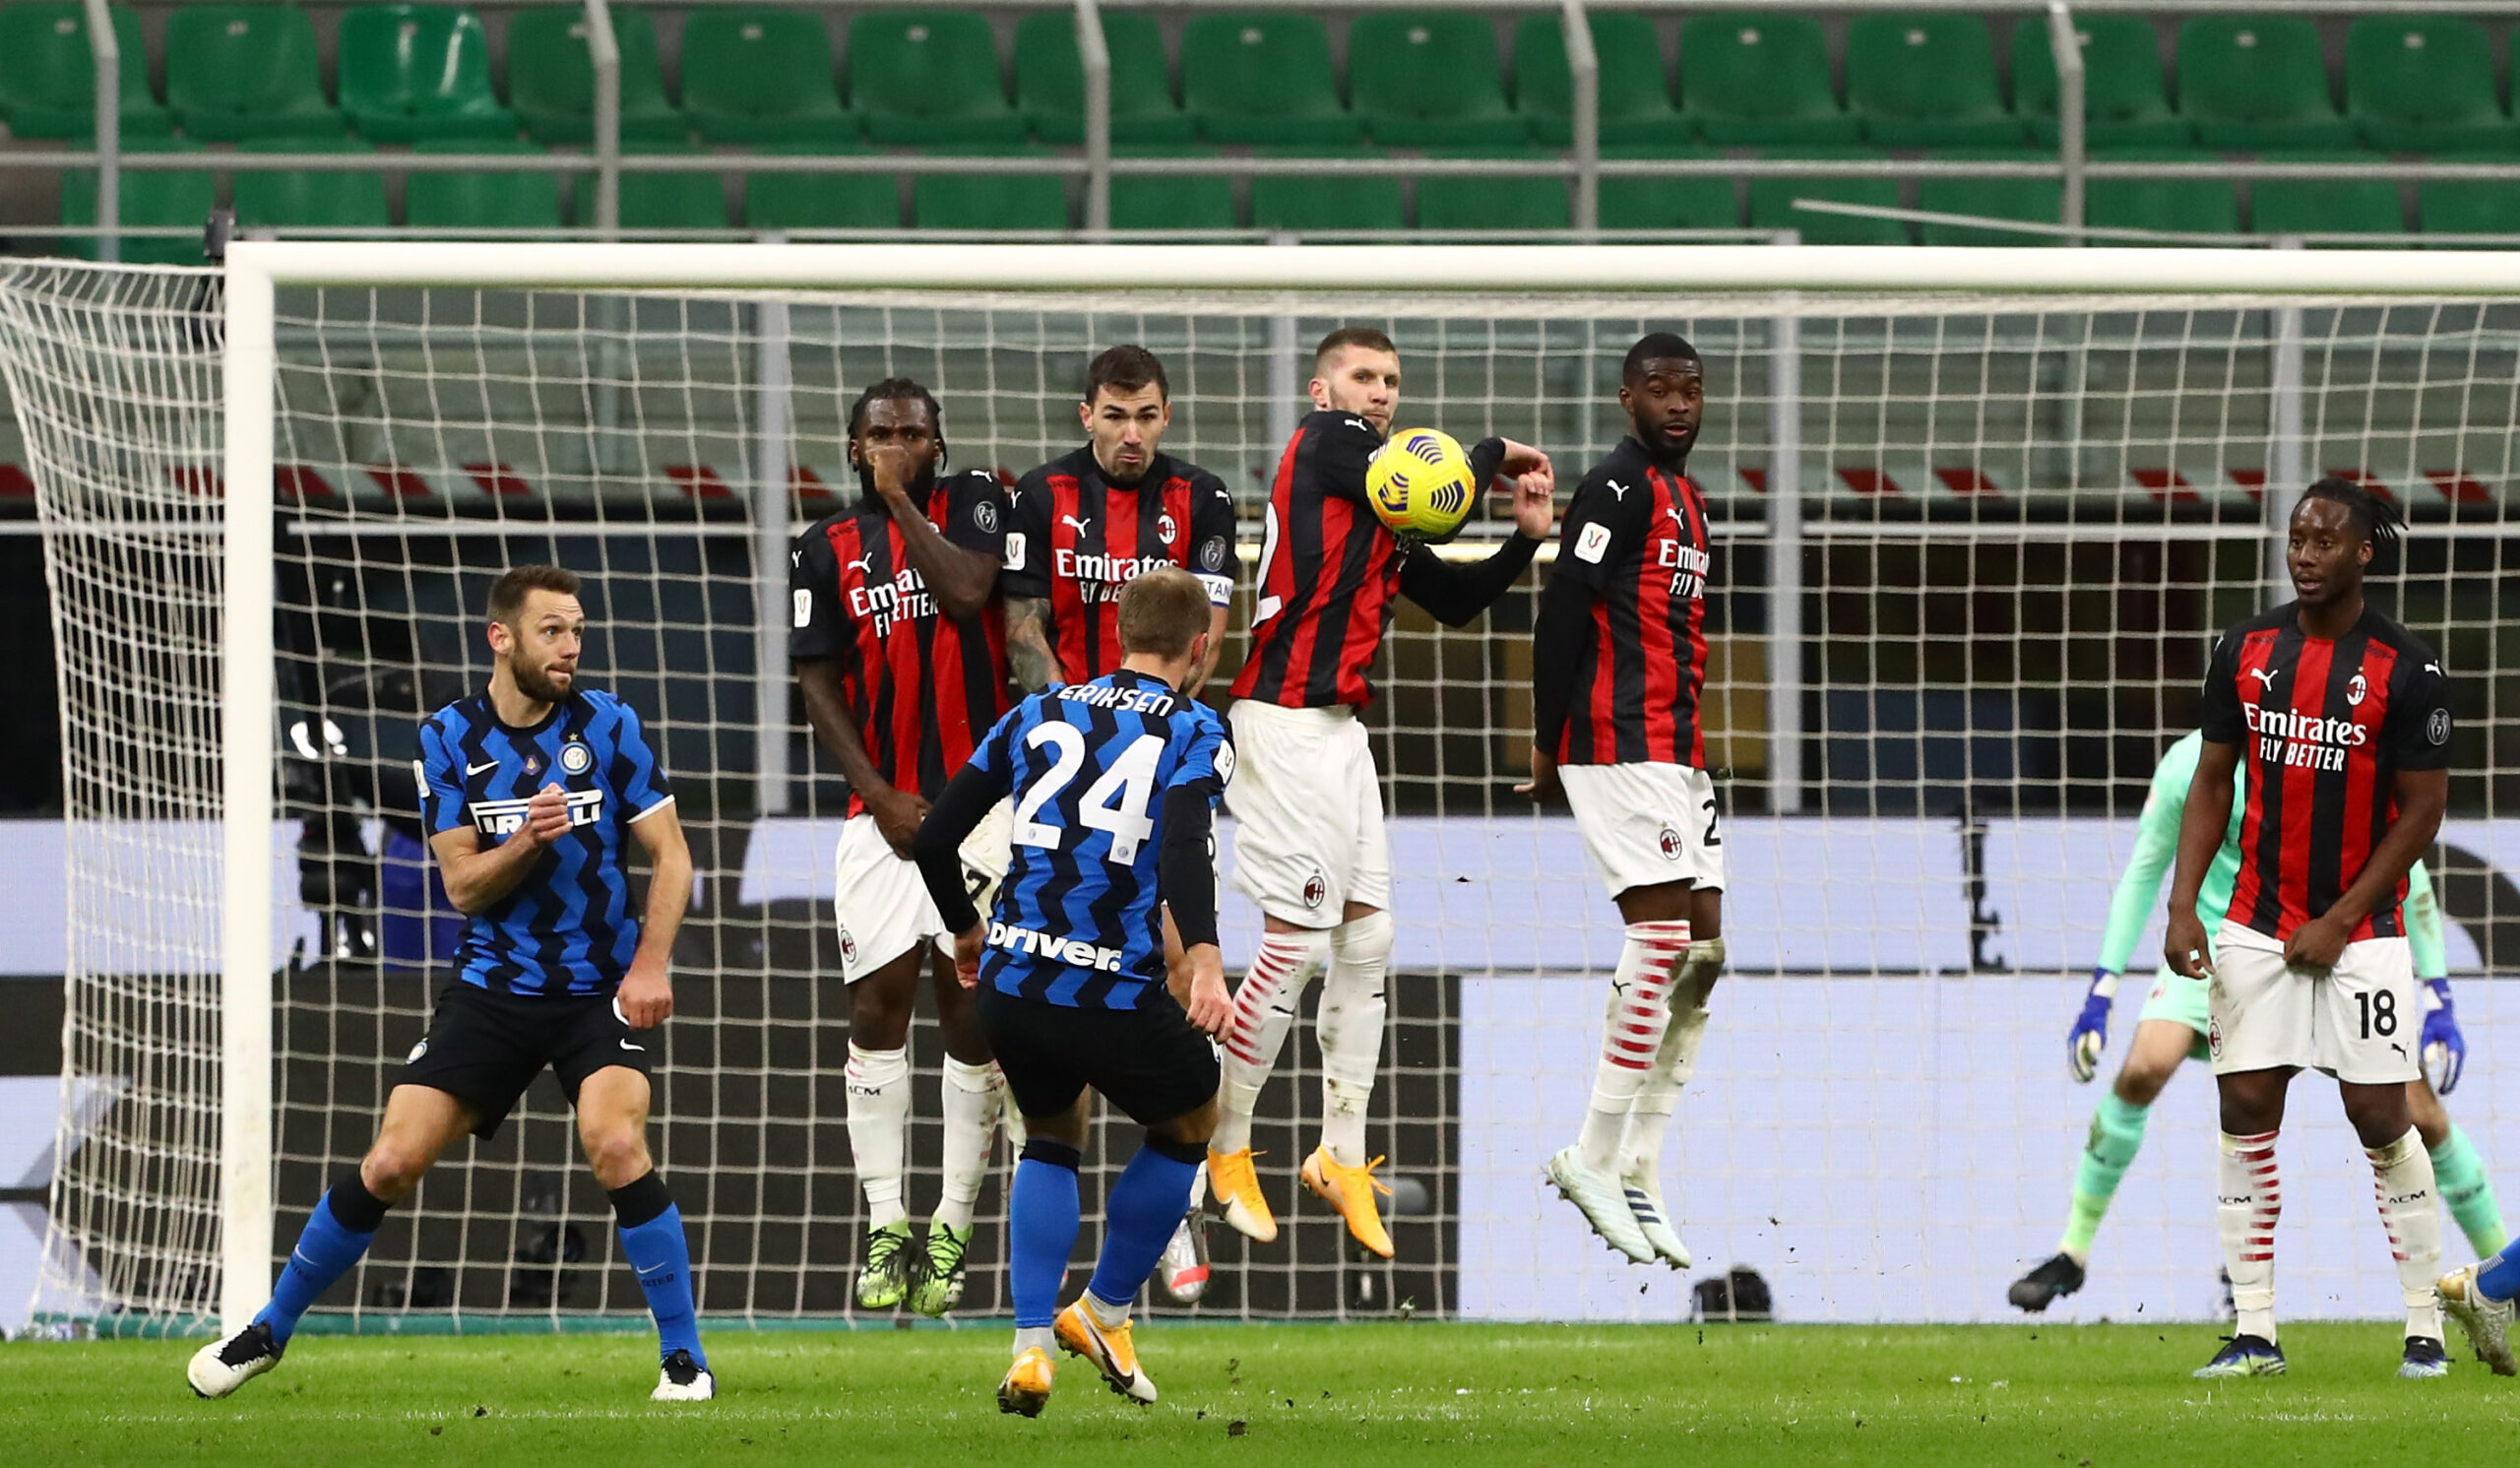 Scudetto-Kampf als Stadtmeisterschaft: Milan und Inter vor direktem Duell